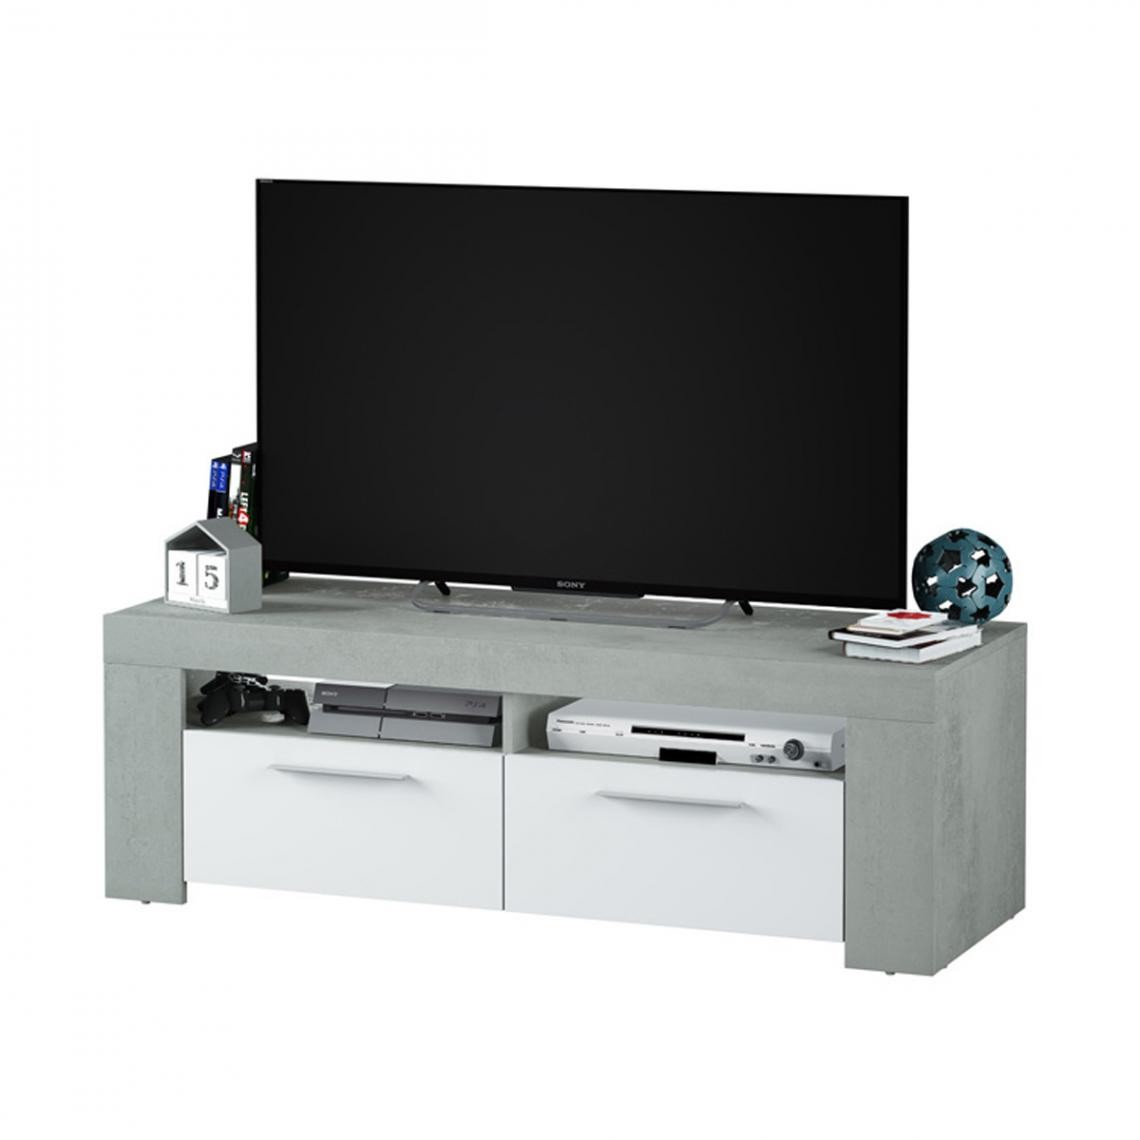 Pegane - Meuble TV coloris Blanc Artik / Ciment en mélamine - Dim : 40 x 120 x 42 cm - Meubles TV, Hi-Fi